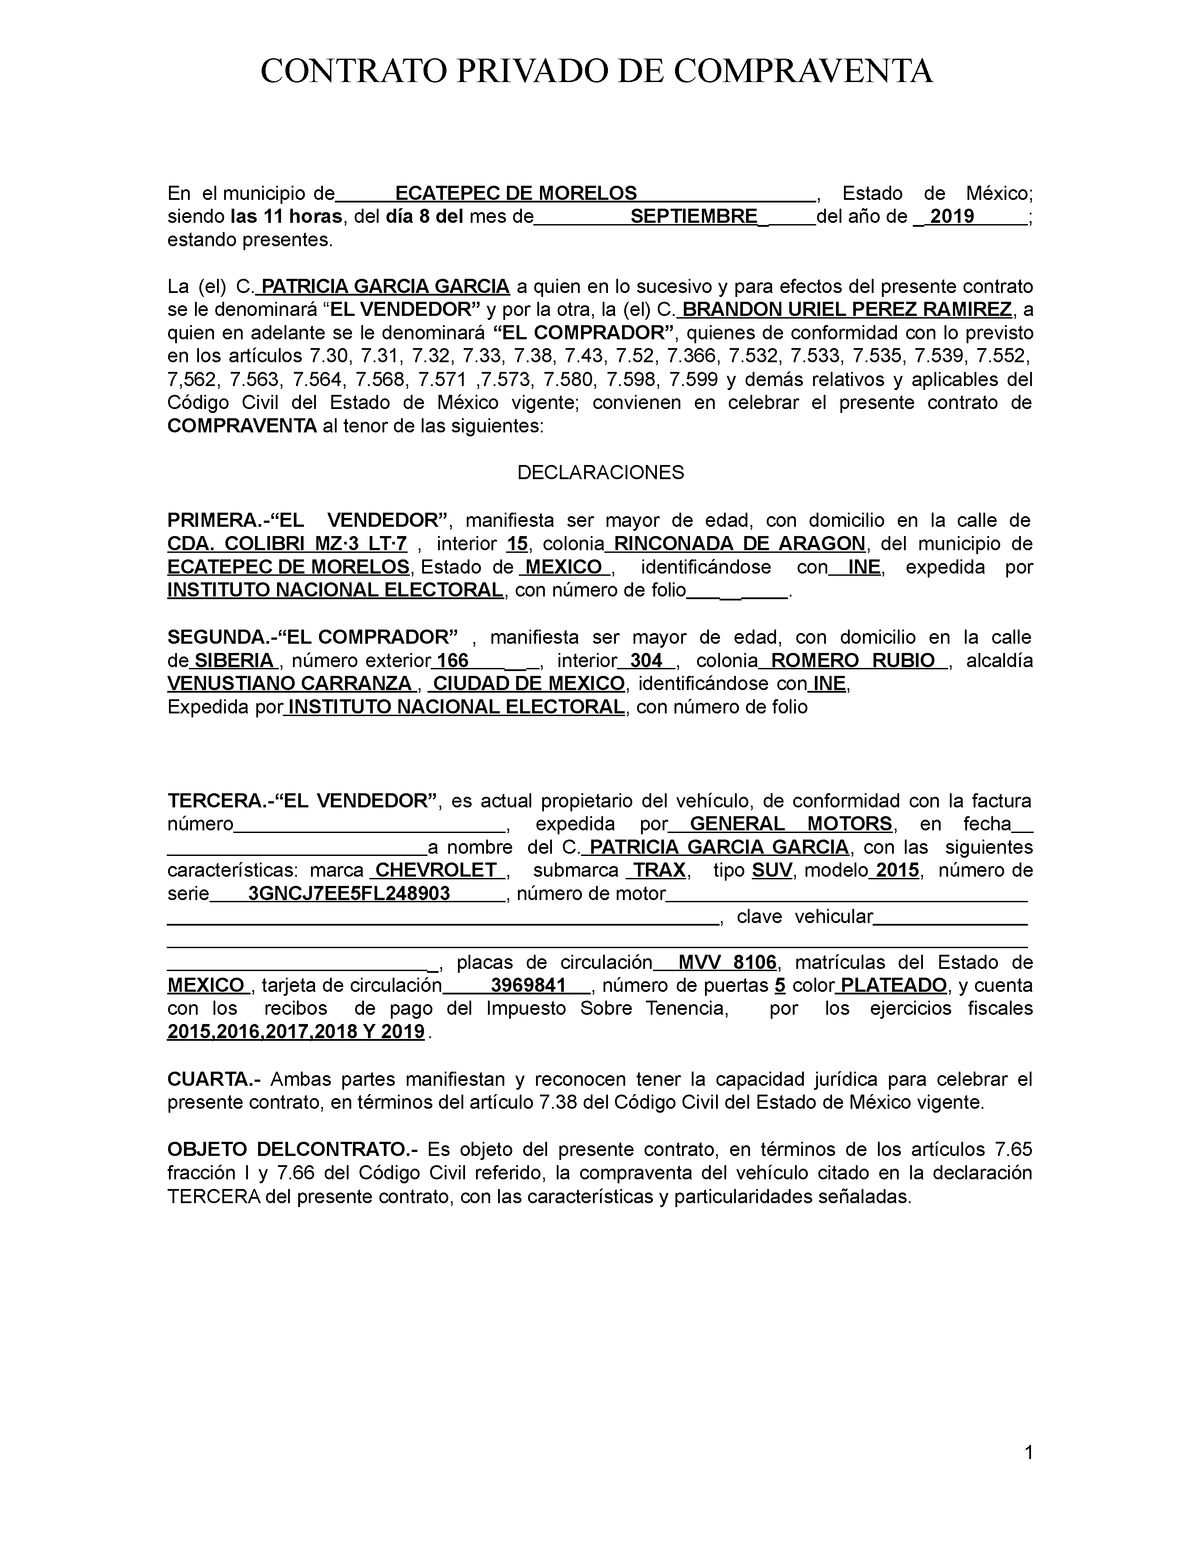 Contrato Privado De Compraventa 2 1 Contrato Privado De Compraventa En El Municipio De 3515